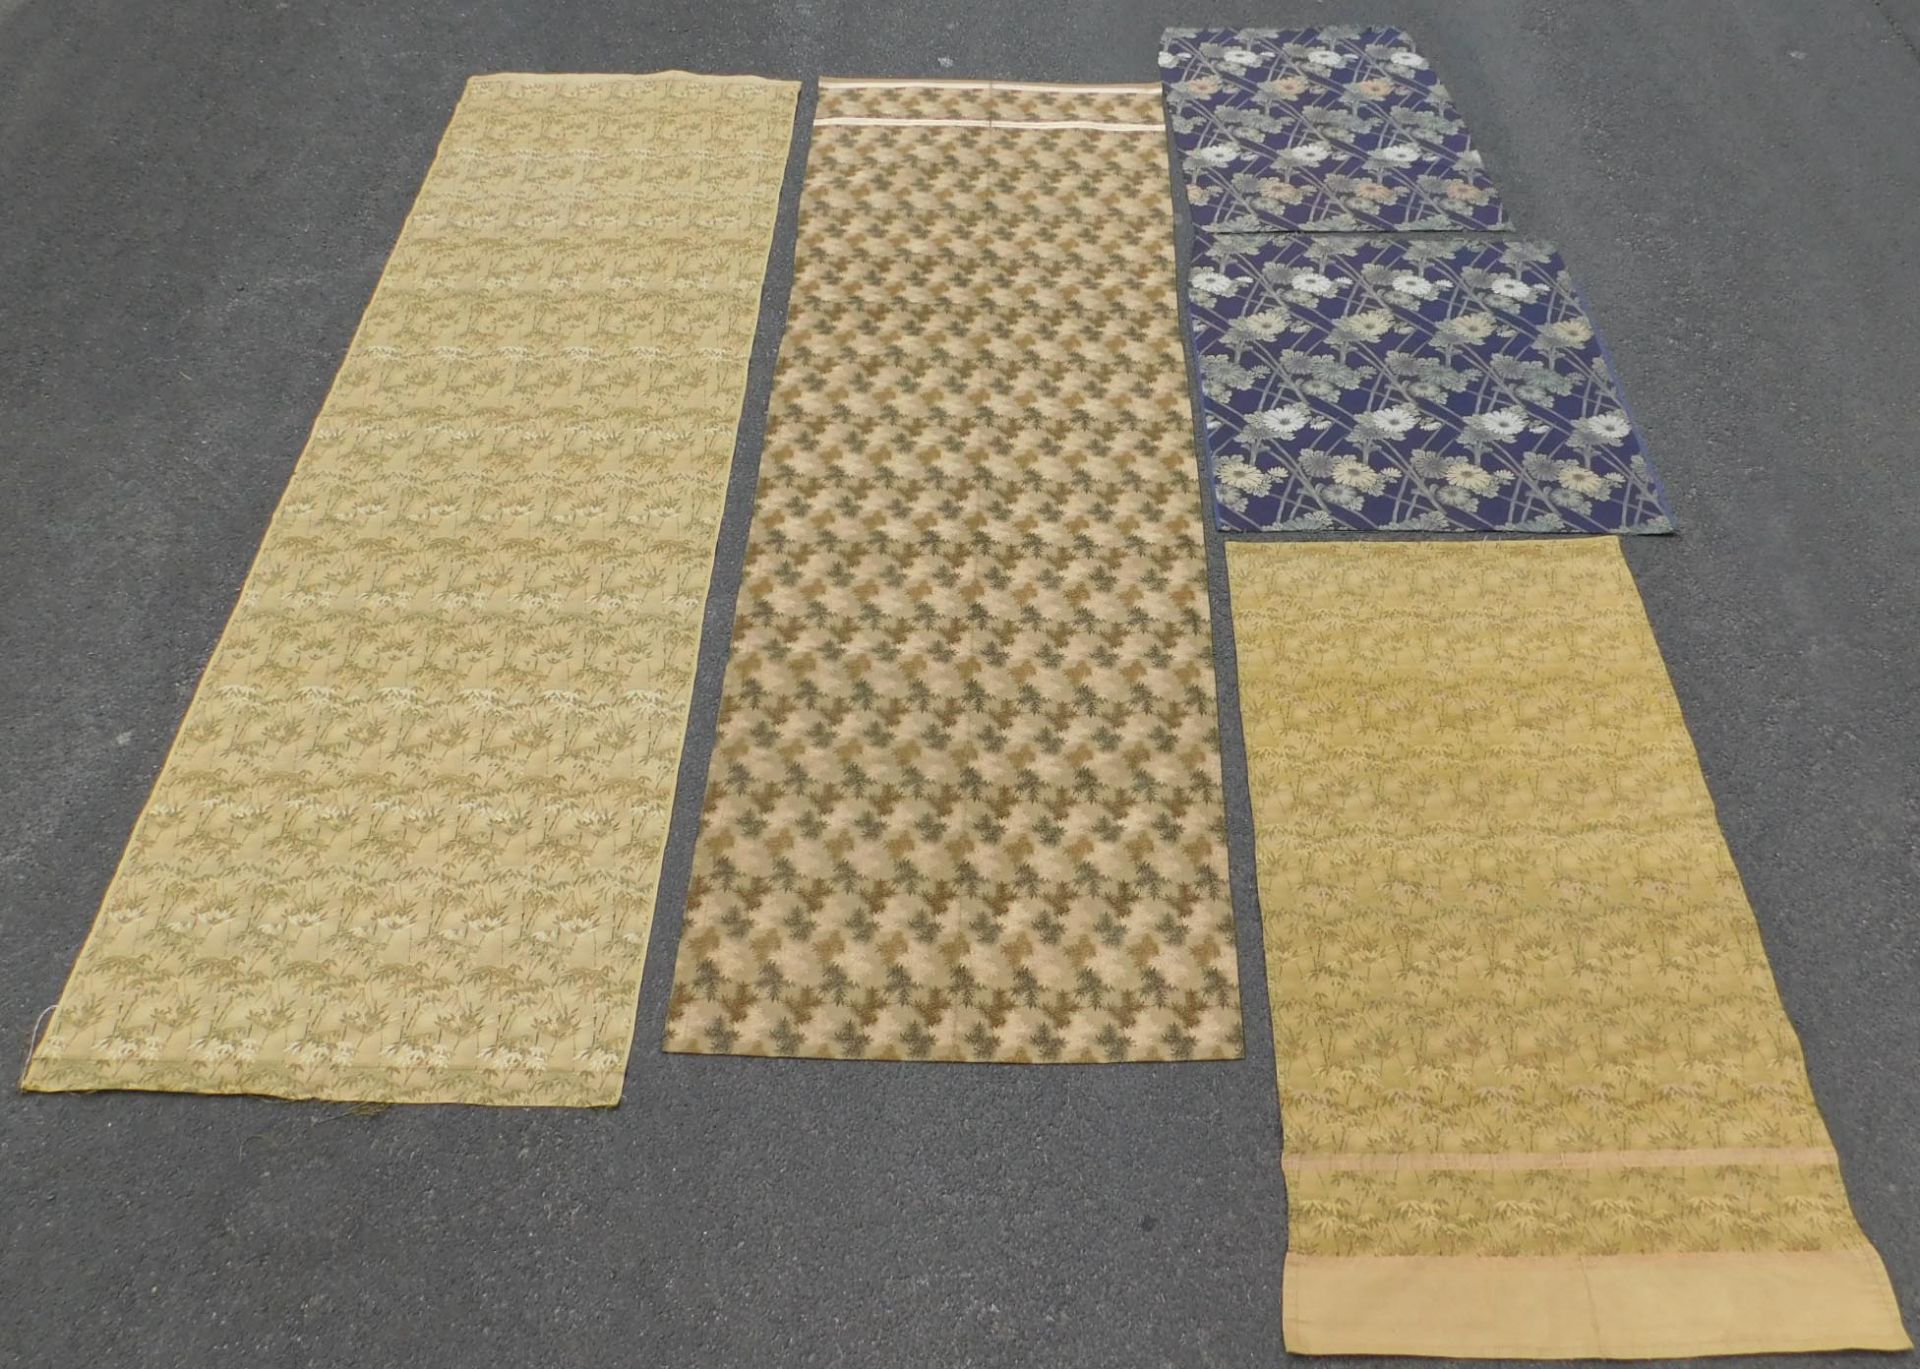 5 Obi Textilien Japan. Wohl alt, teils Seide, gewebt.Bis 205,5 cm x 65 cm.5 Obi Textiles Japan.